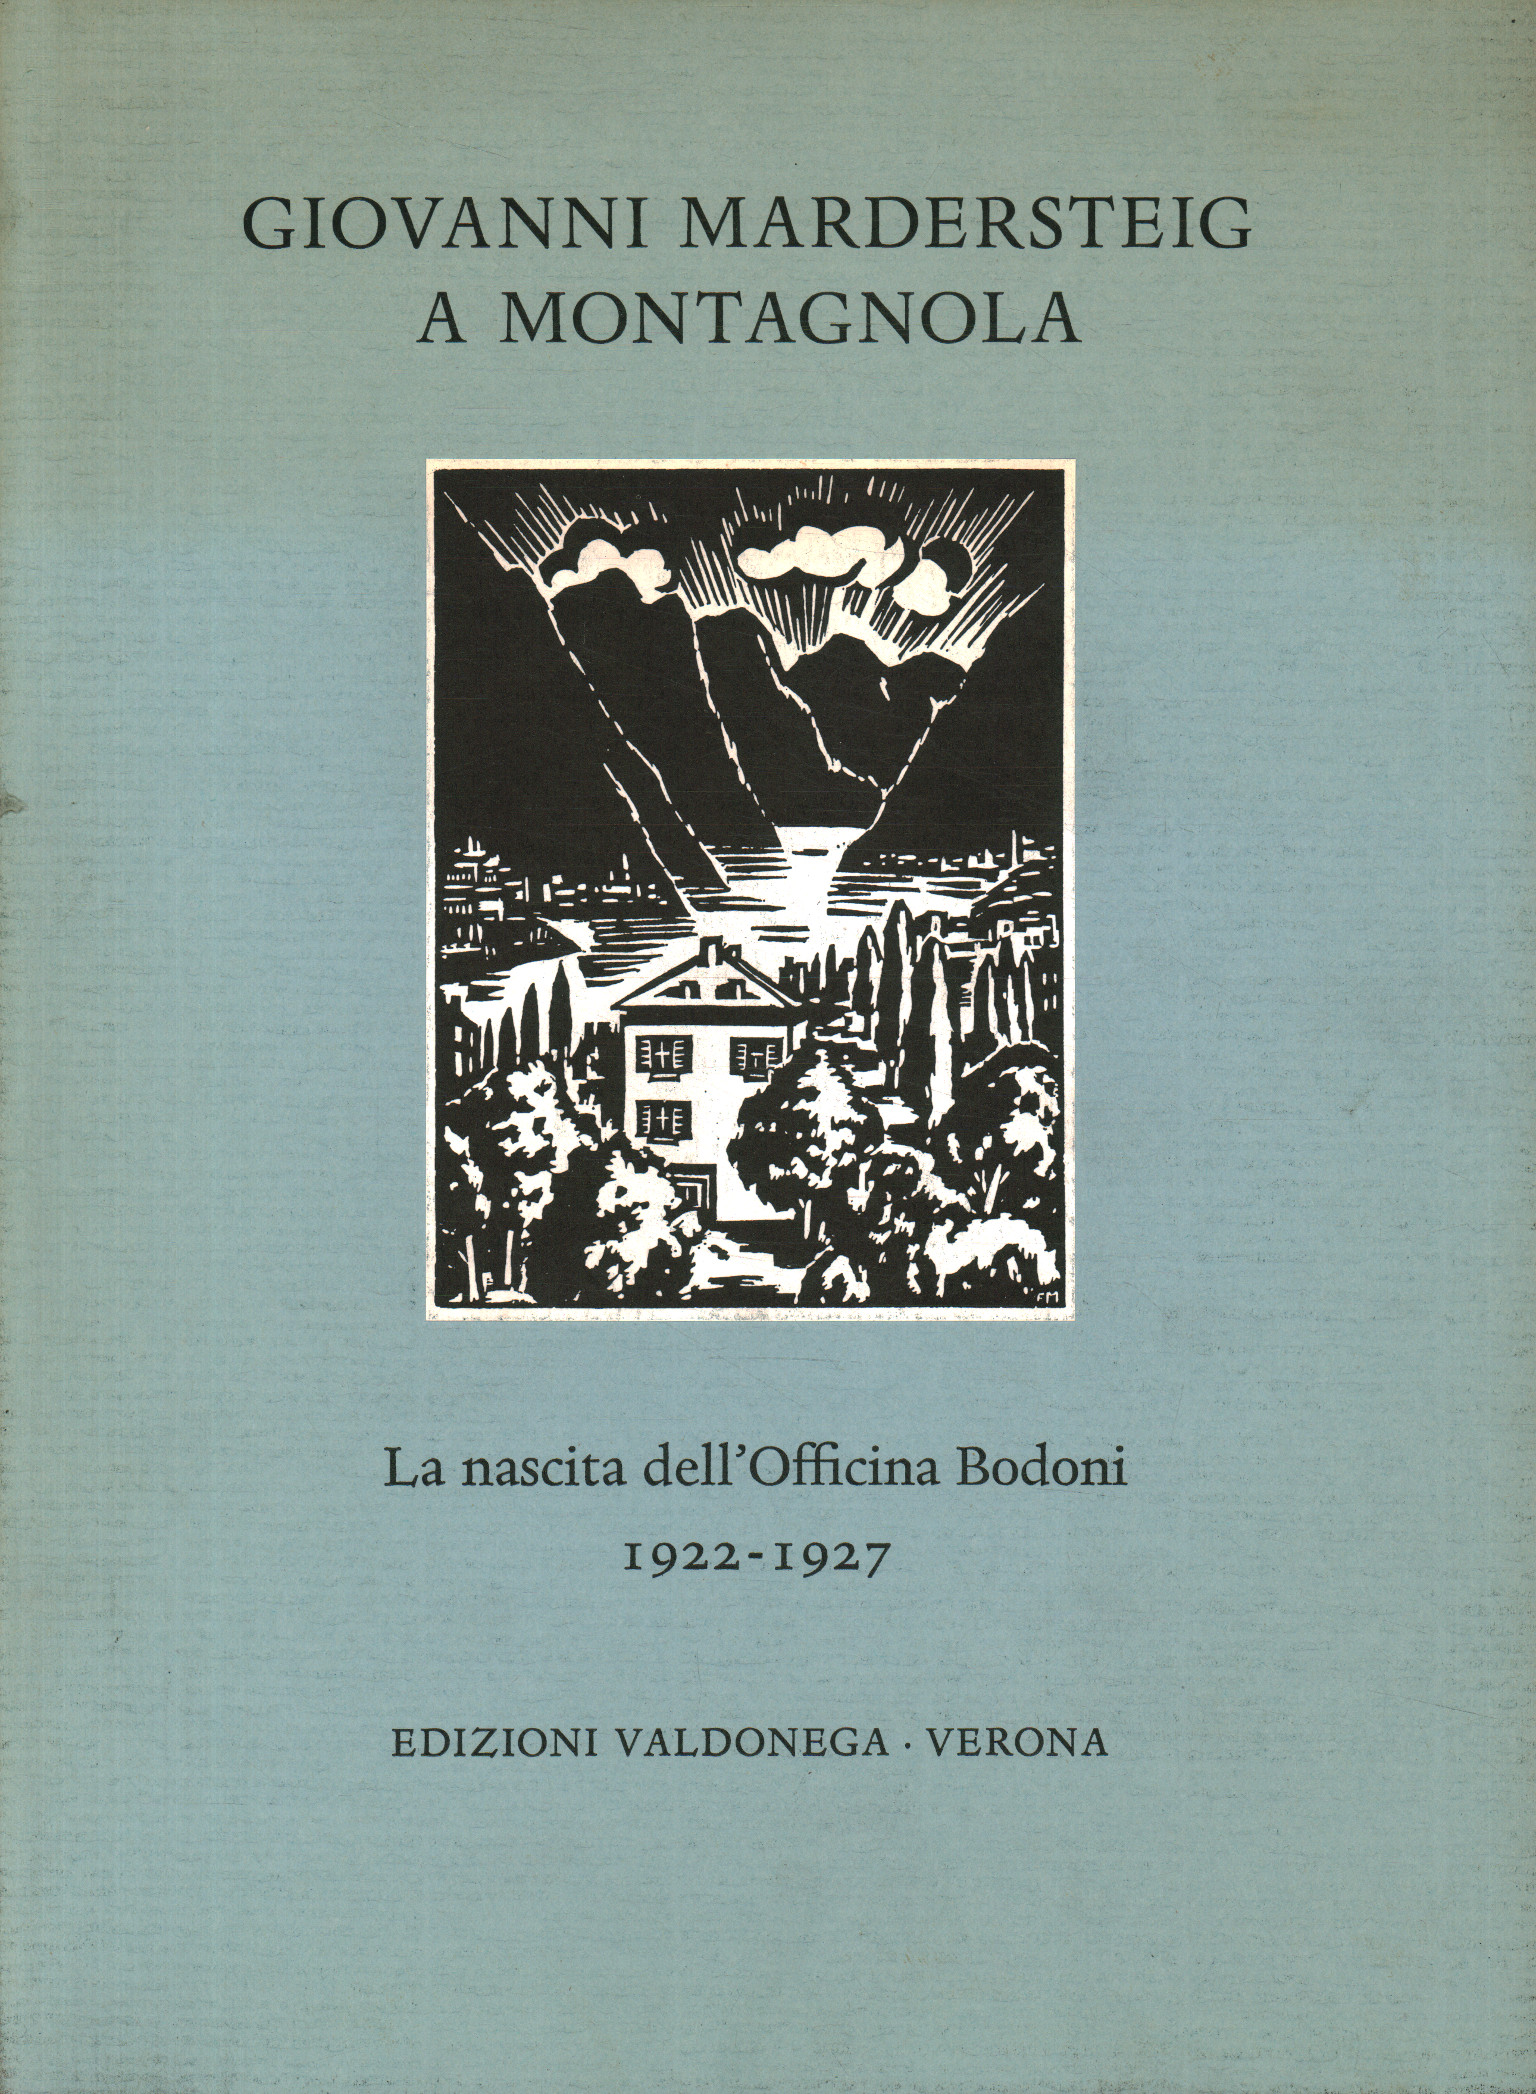 Giovanni Mardersteig à Montagnola